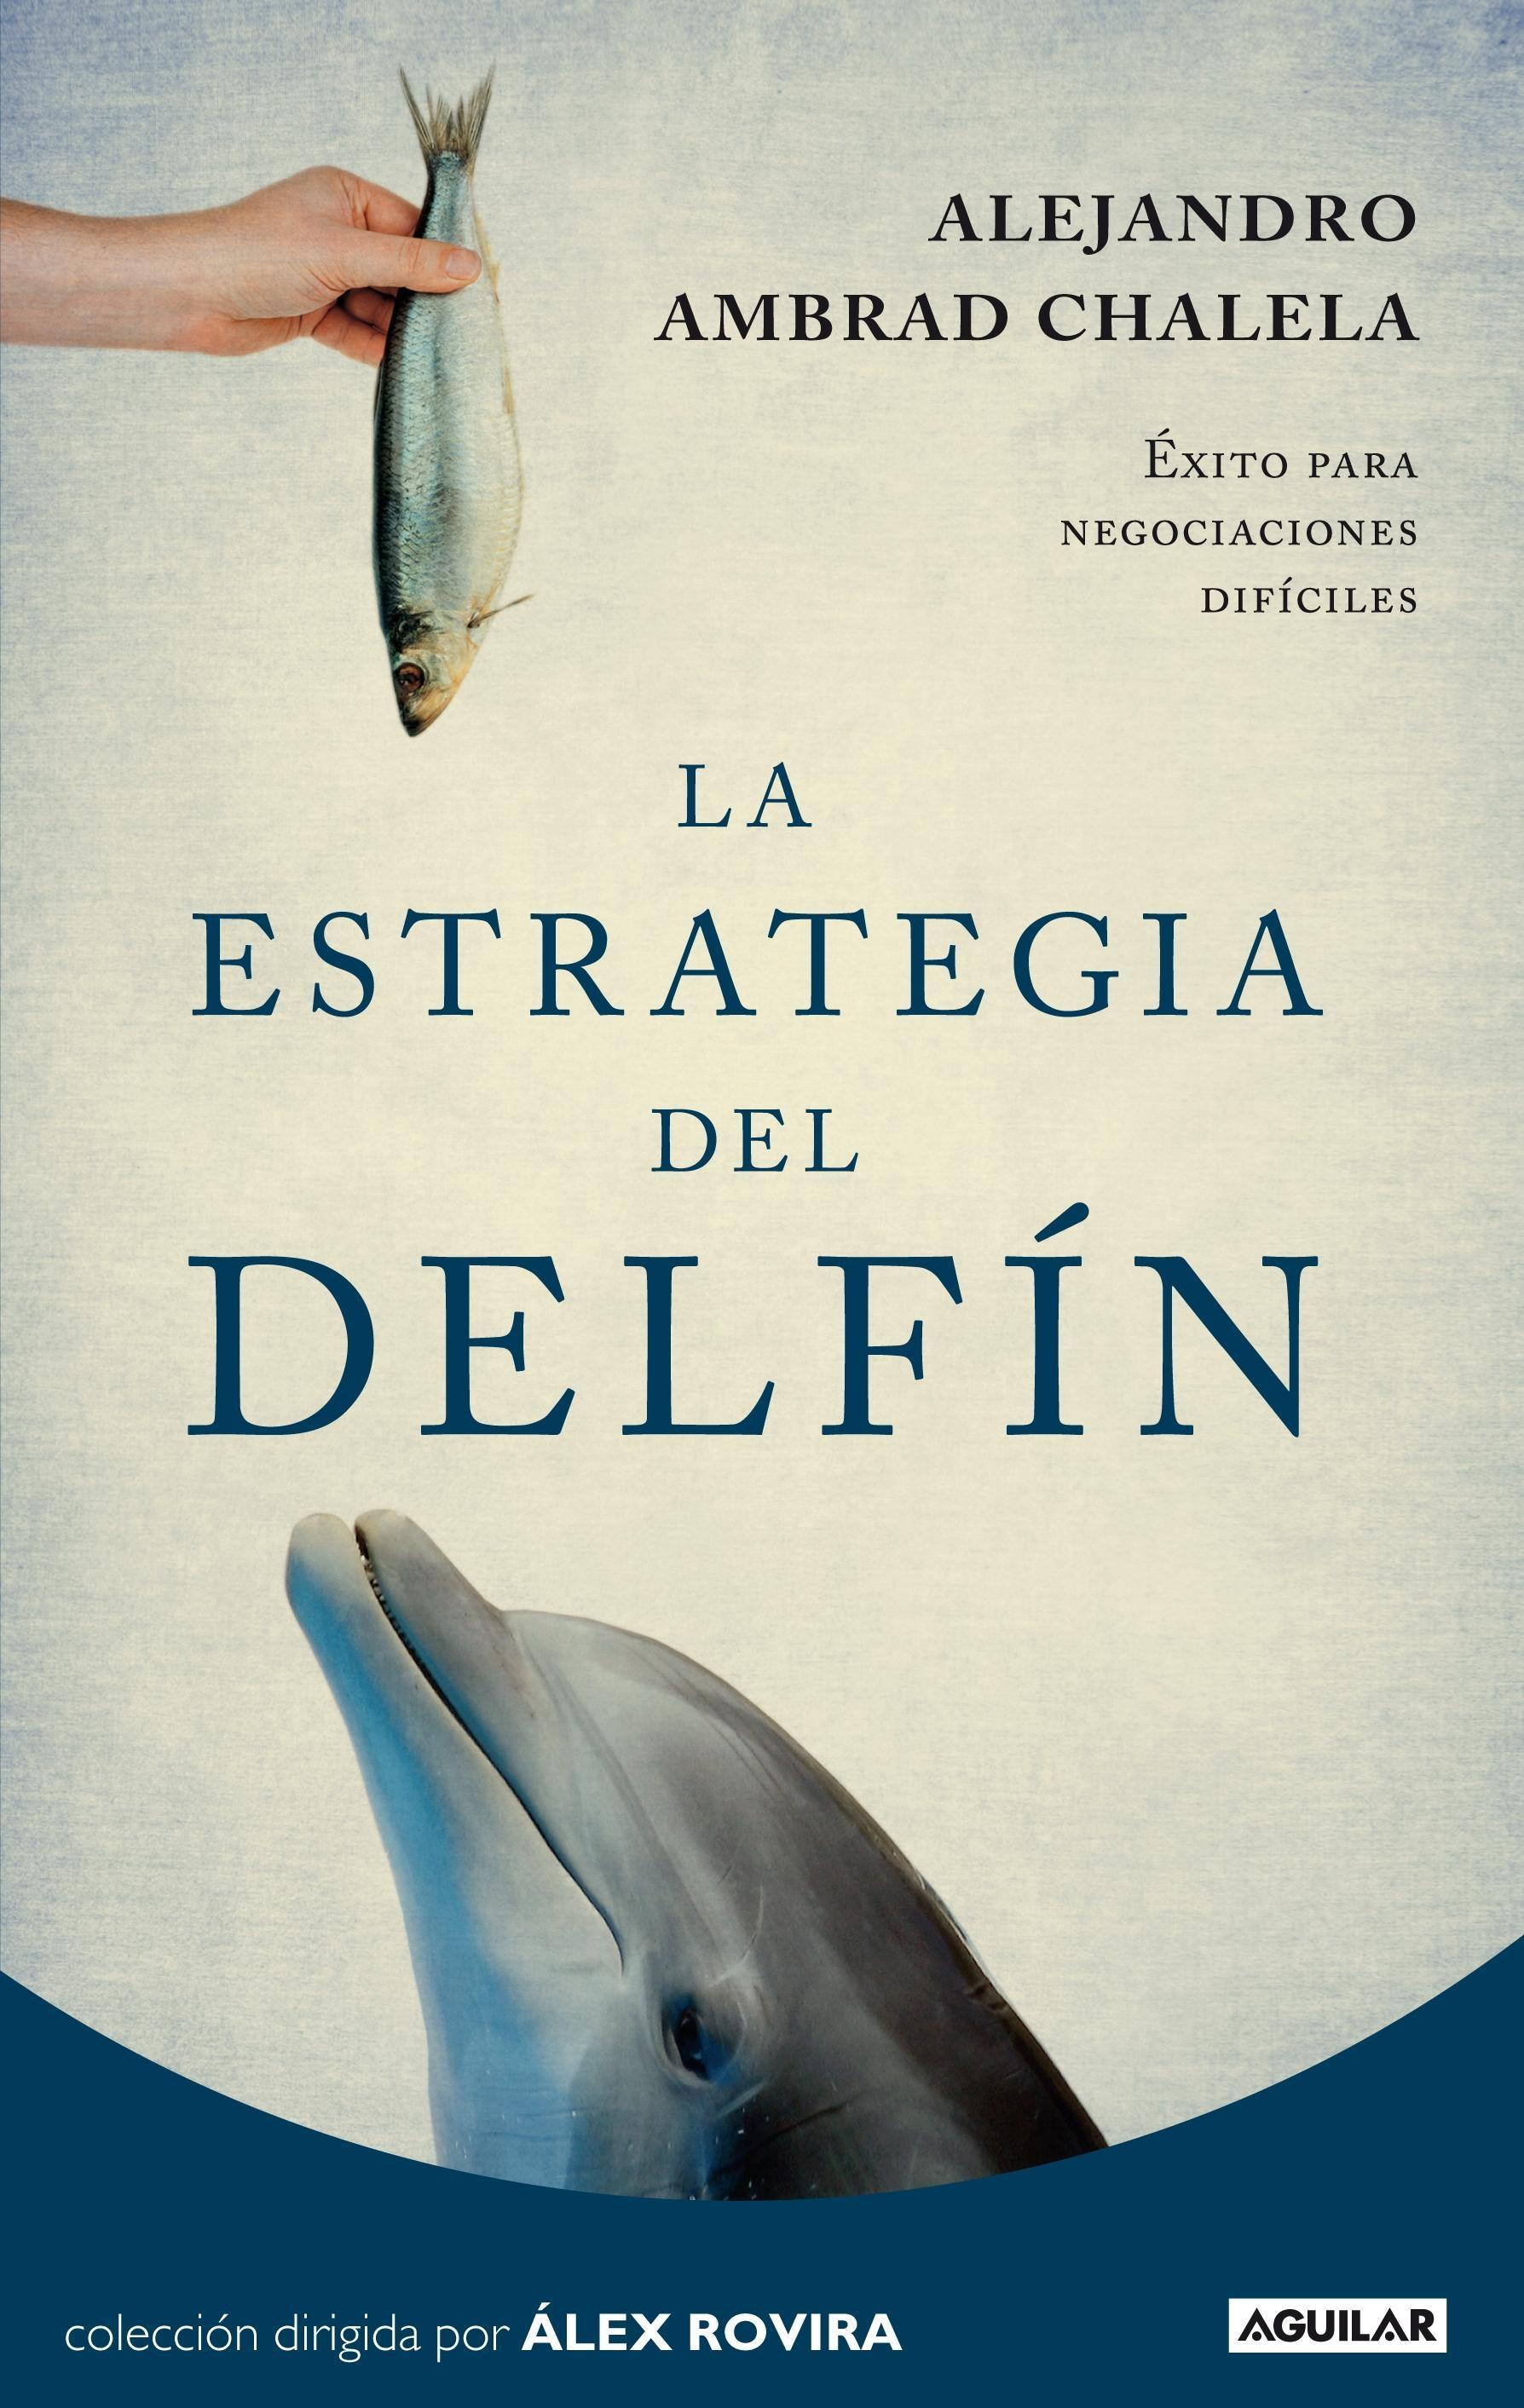 La estrategia del delfín "Éxito para negociaciones difíciles"